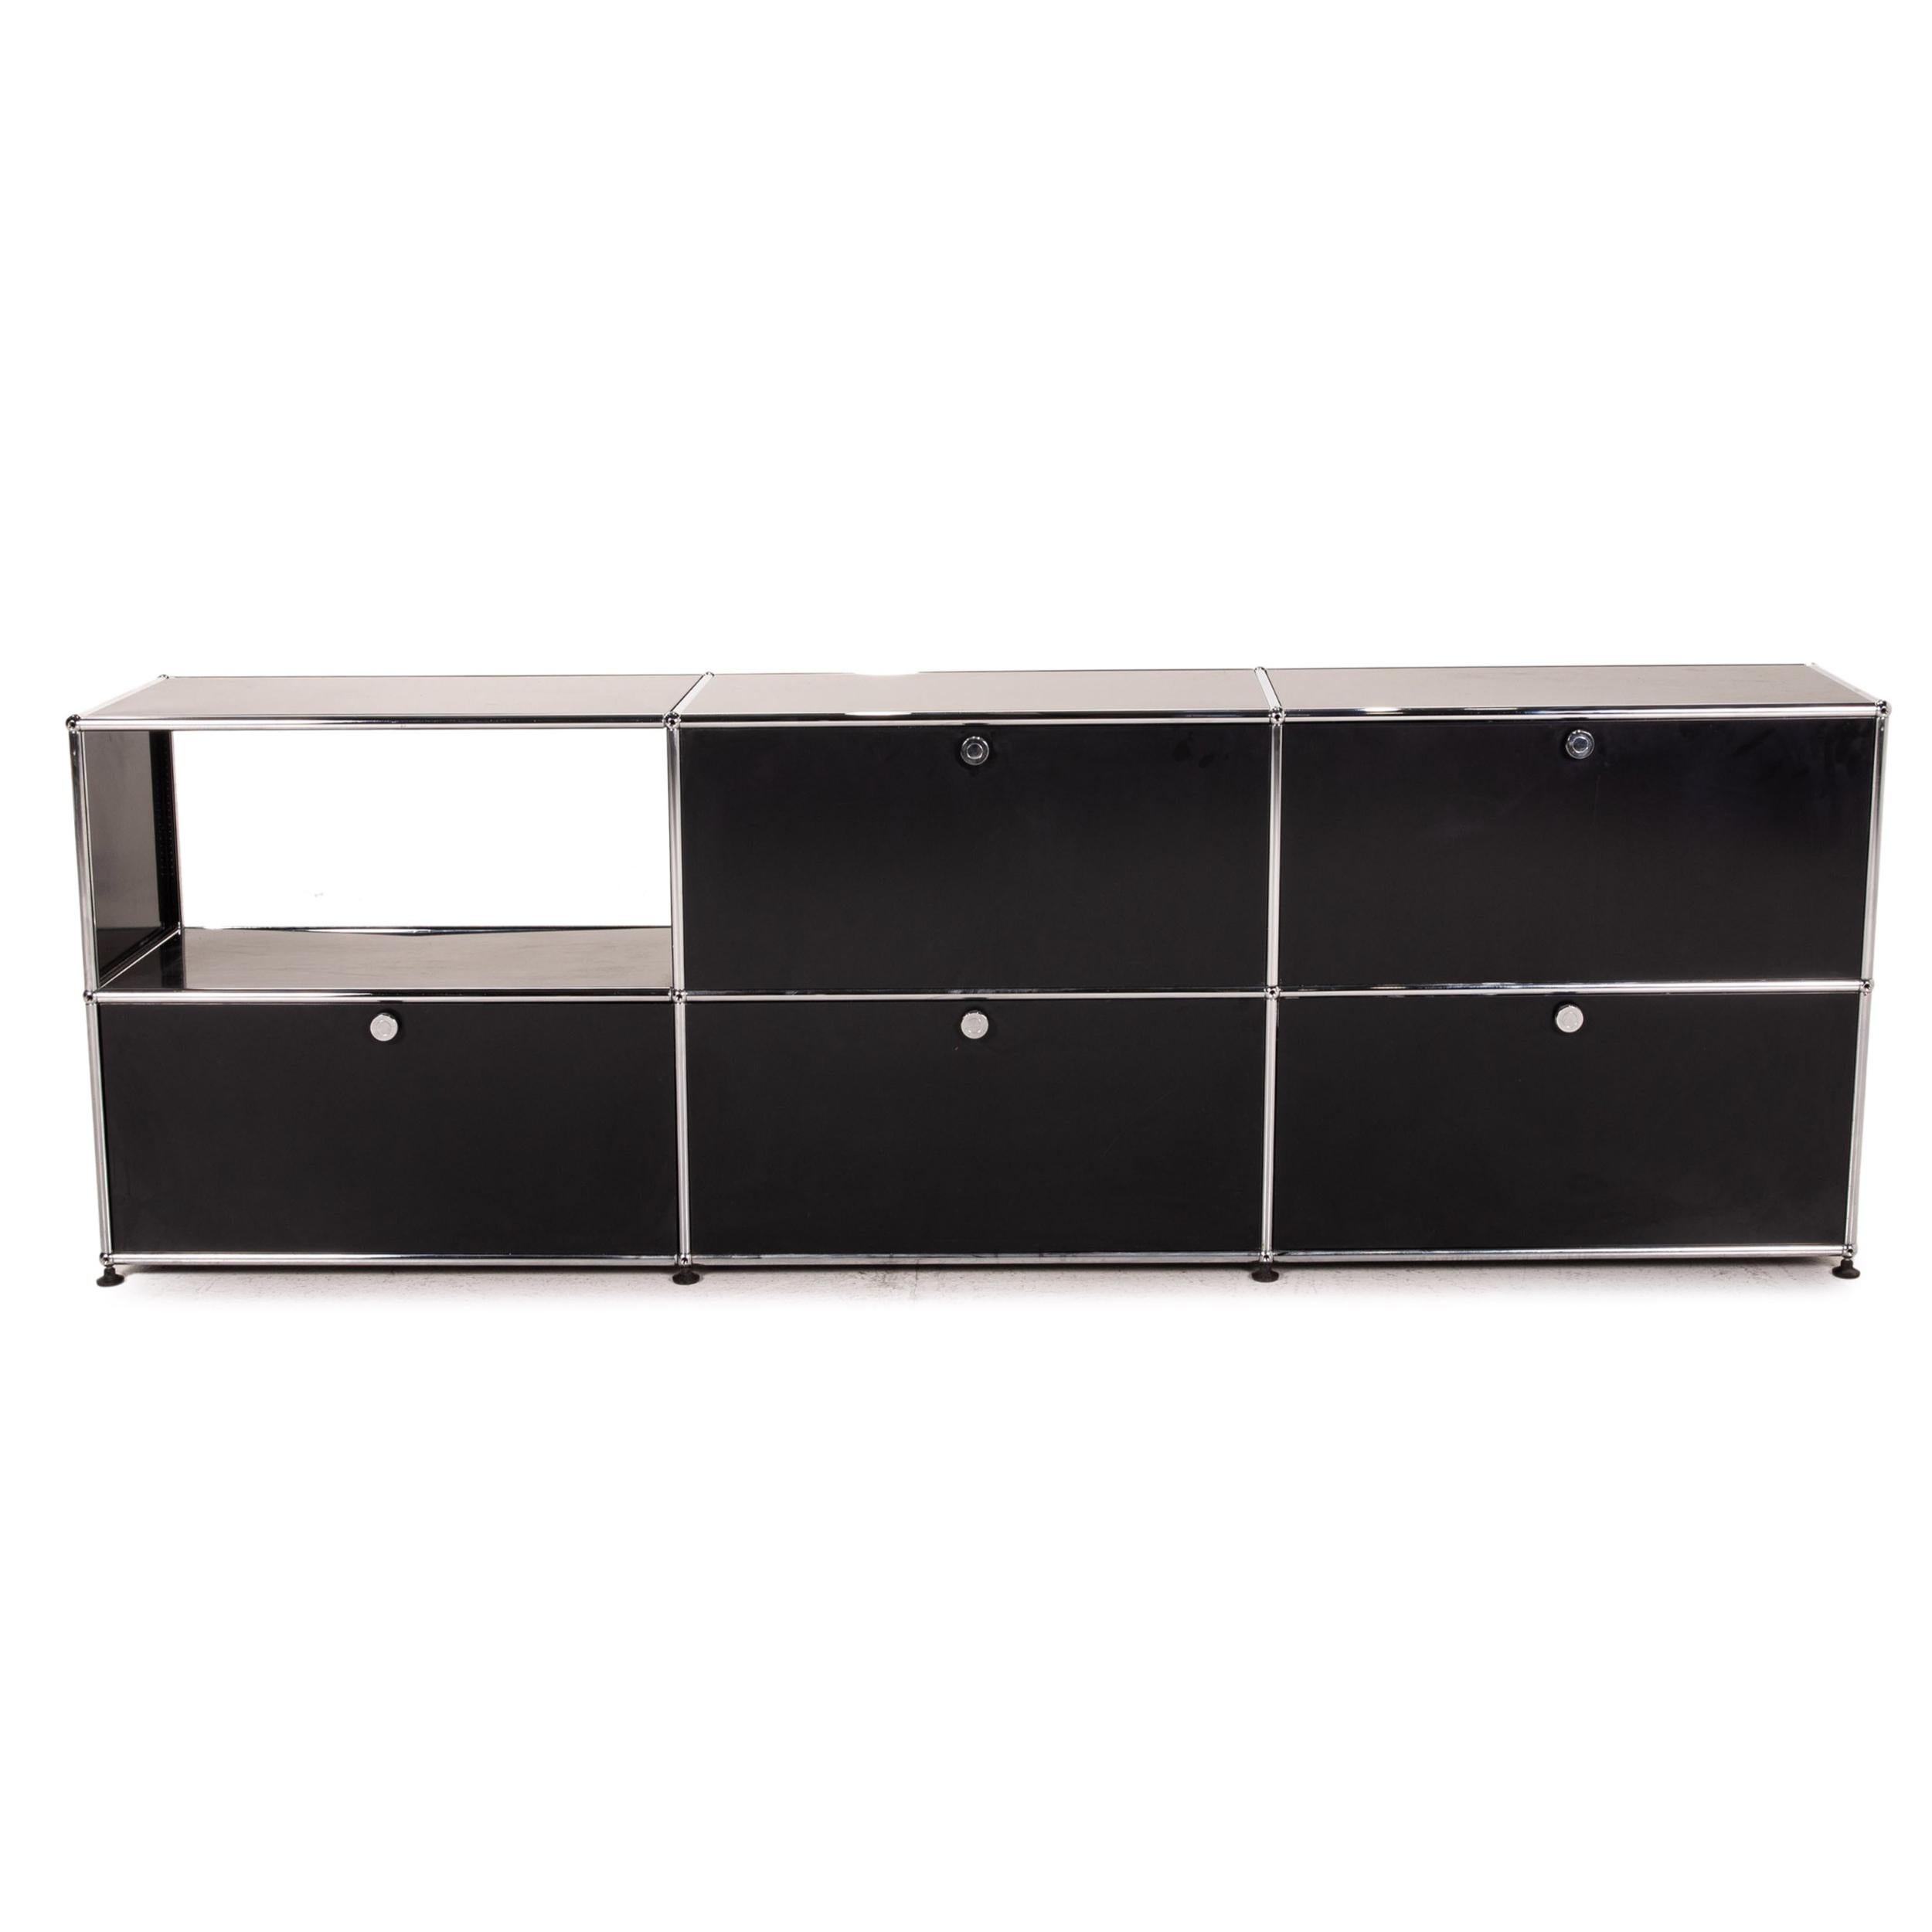 USM Haller Metal Sideboard Black Office Furniture 3